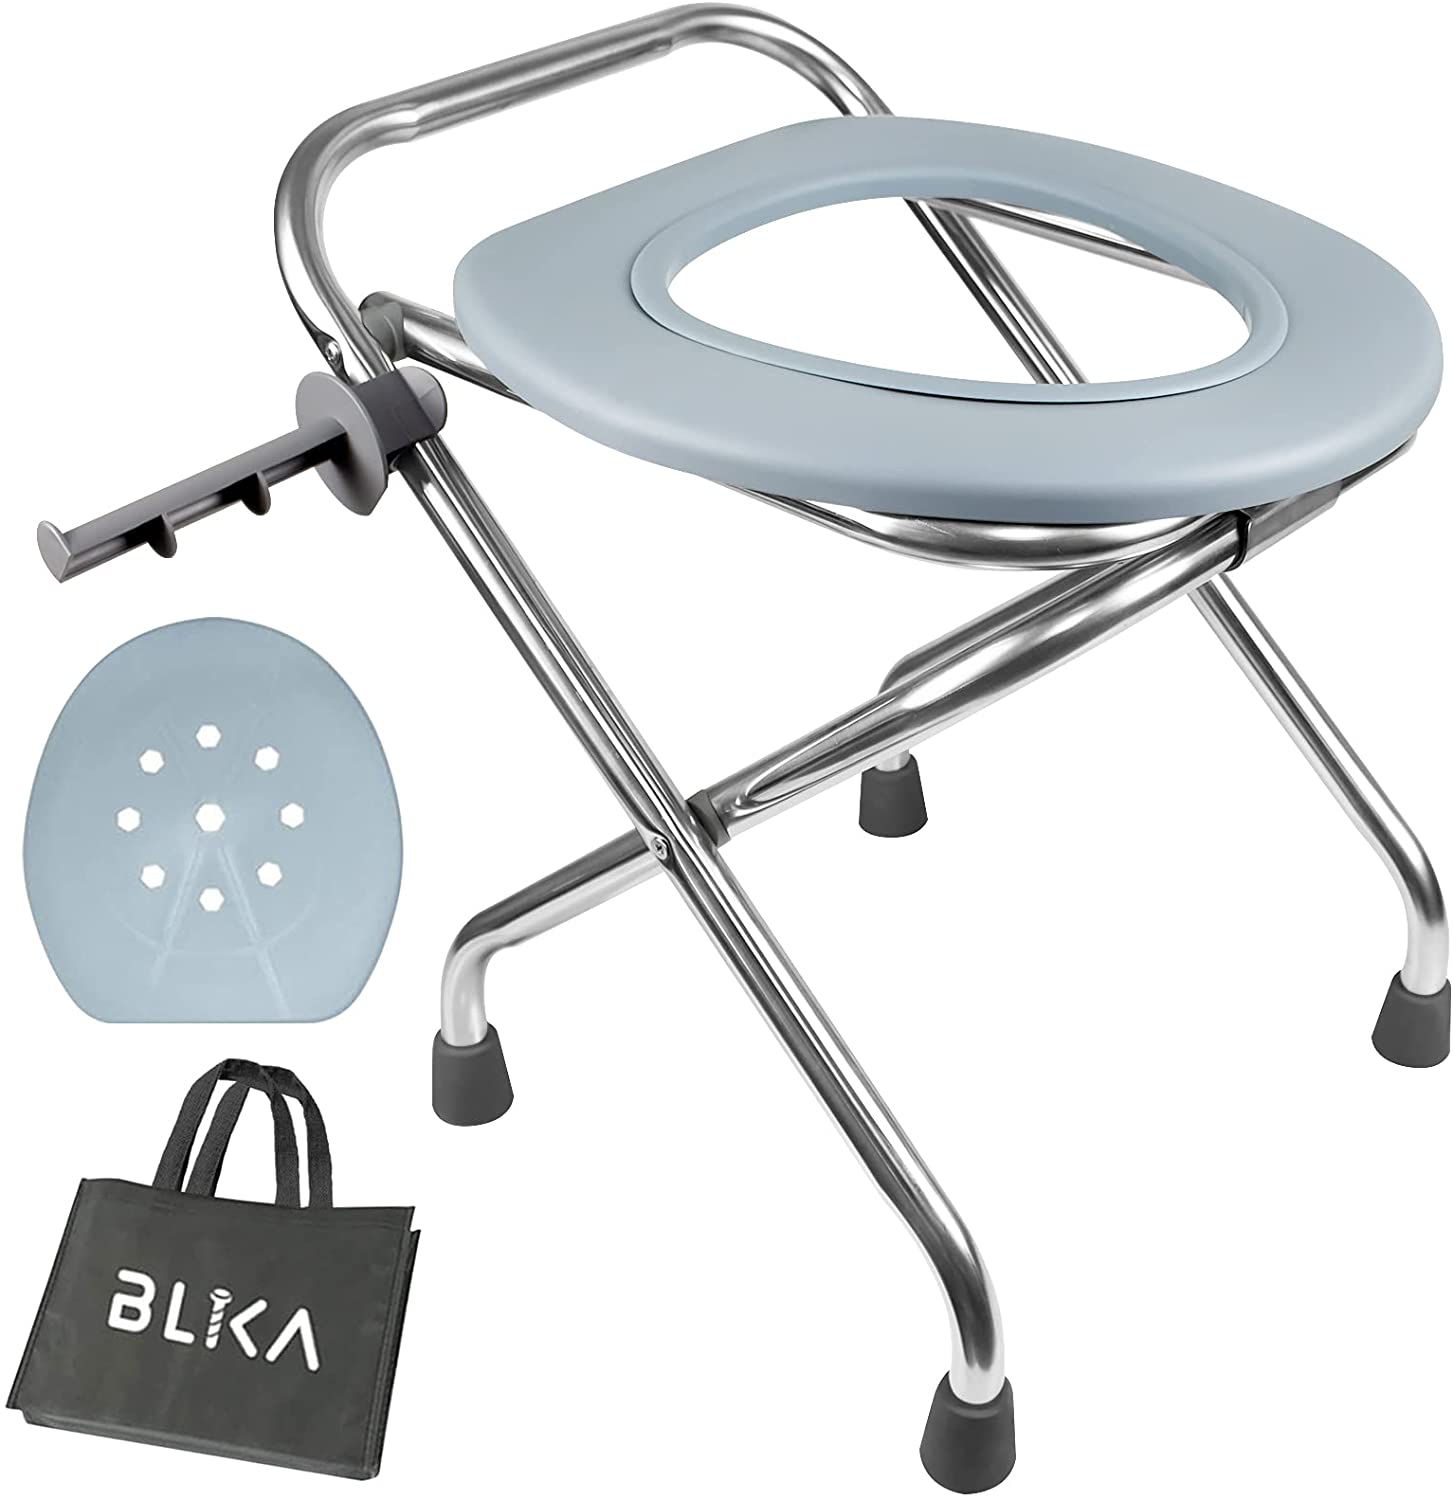 BLIKA Stainless Steel Folding Commode & Portable Toilet